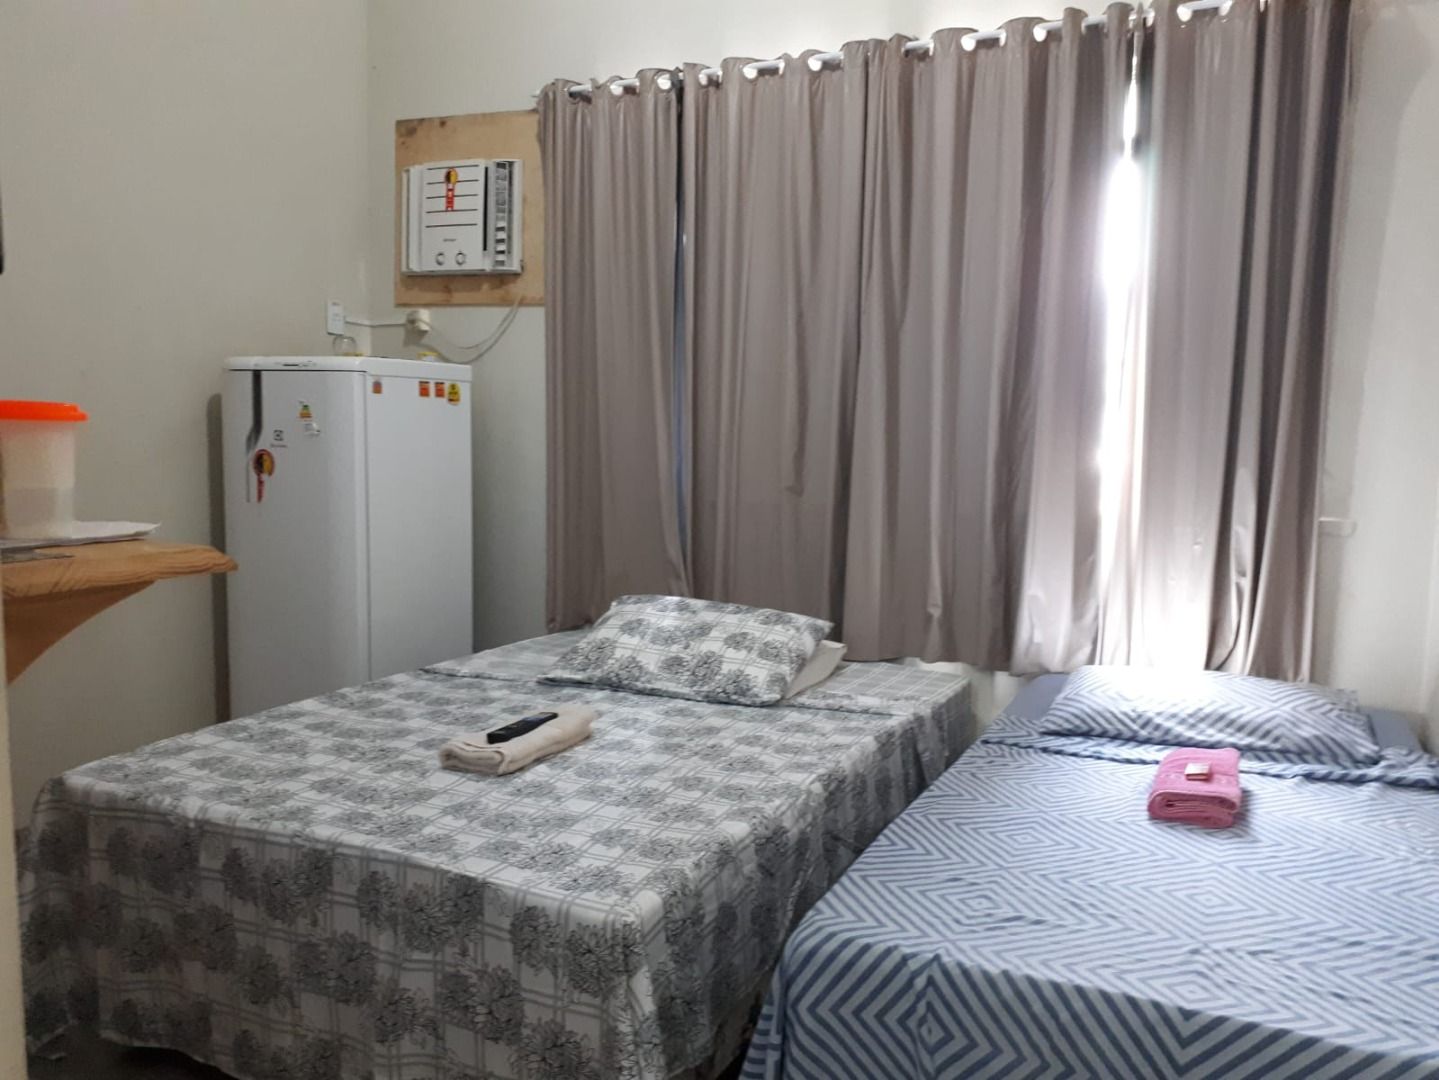 Apartamento com 1 dormitório à venda, 33 m² por RS 80.000,00 - Centro - Manaus-AM